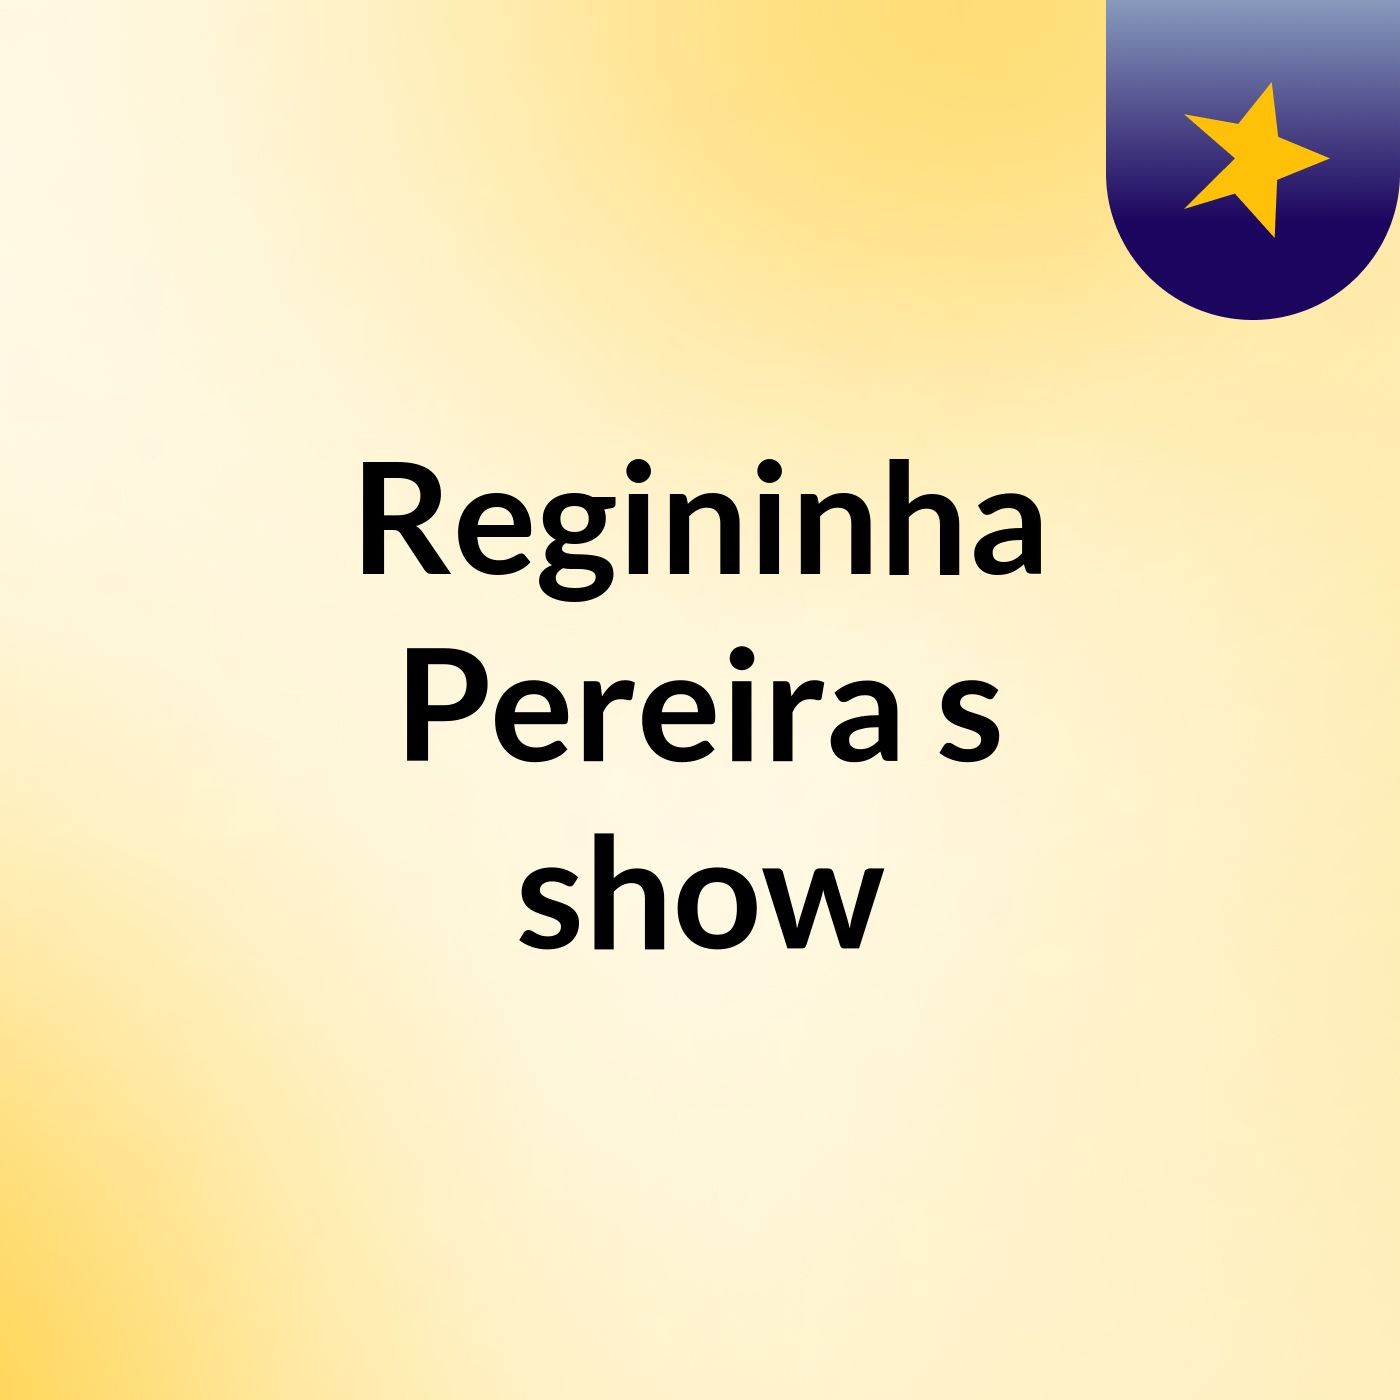 Regininha Pereira's show